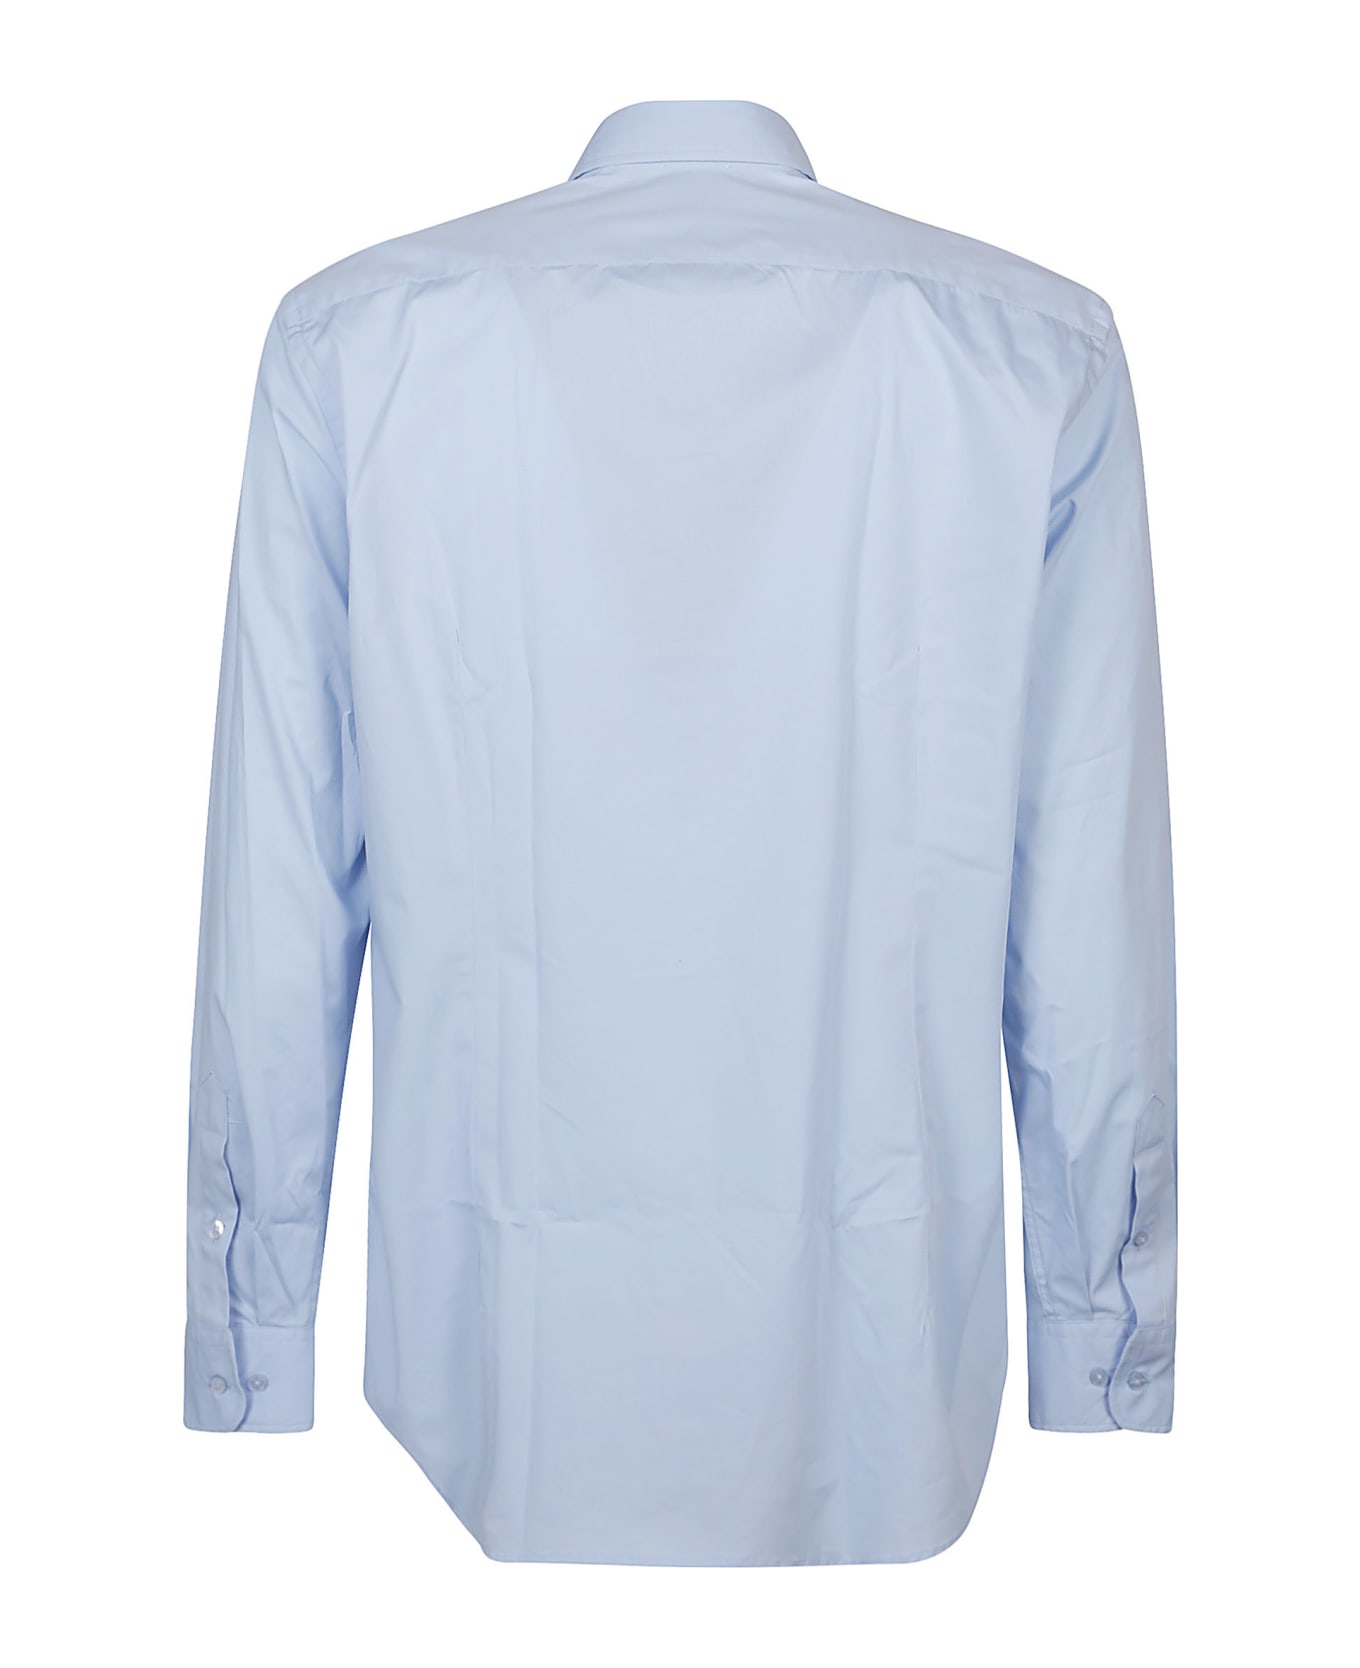 Etro Roma Long Sleeve Shirt - Azzurro シャツ